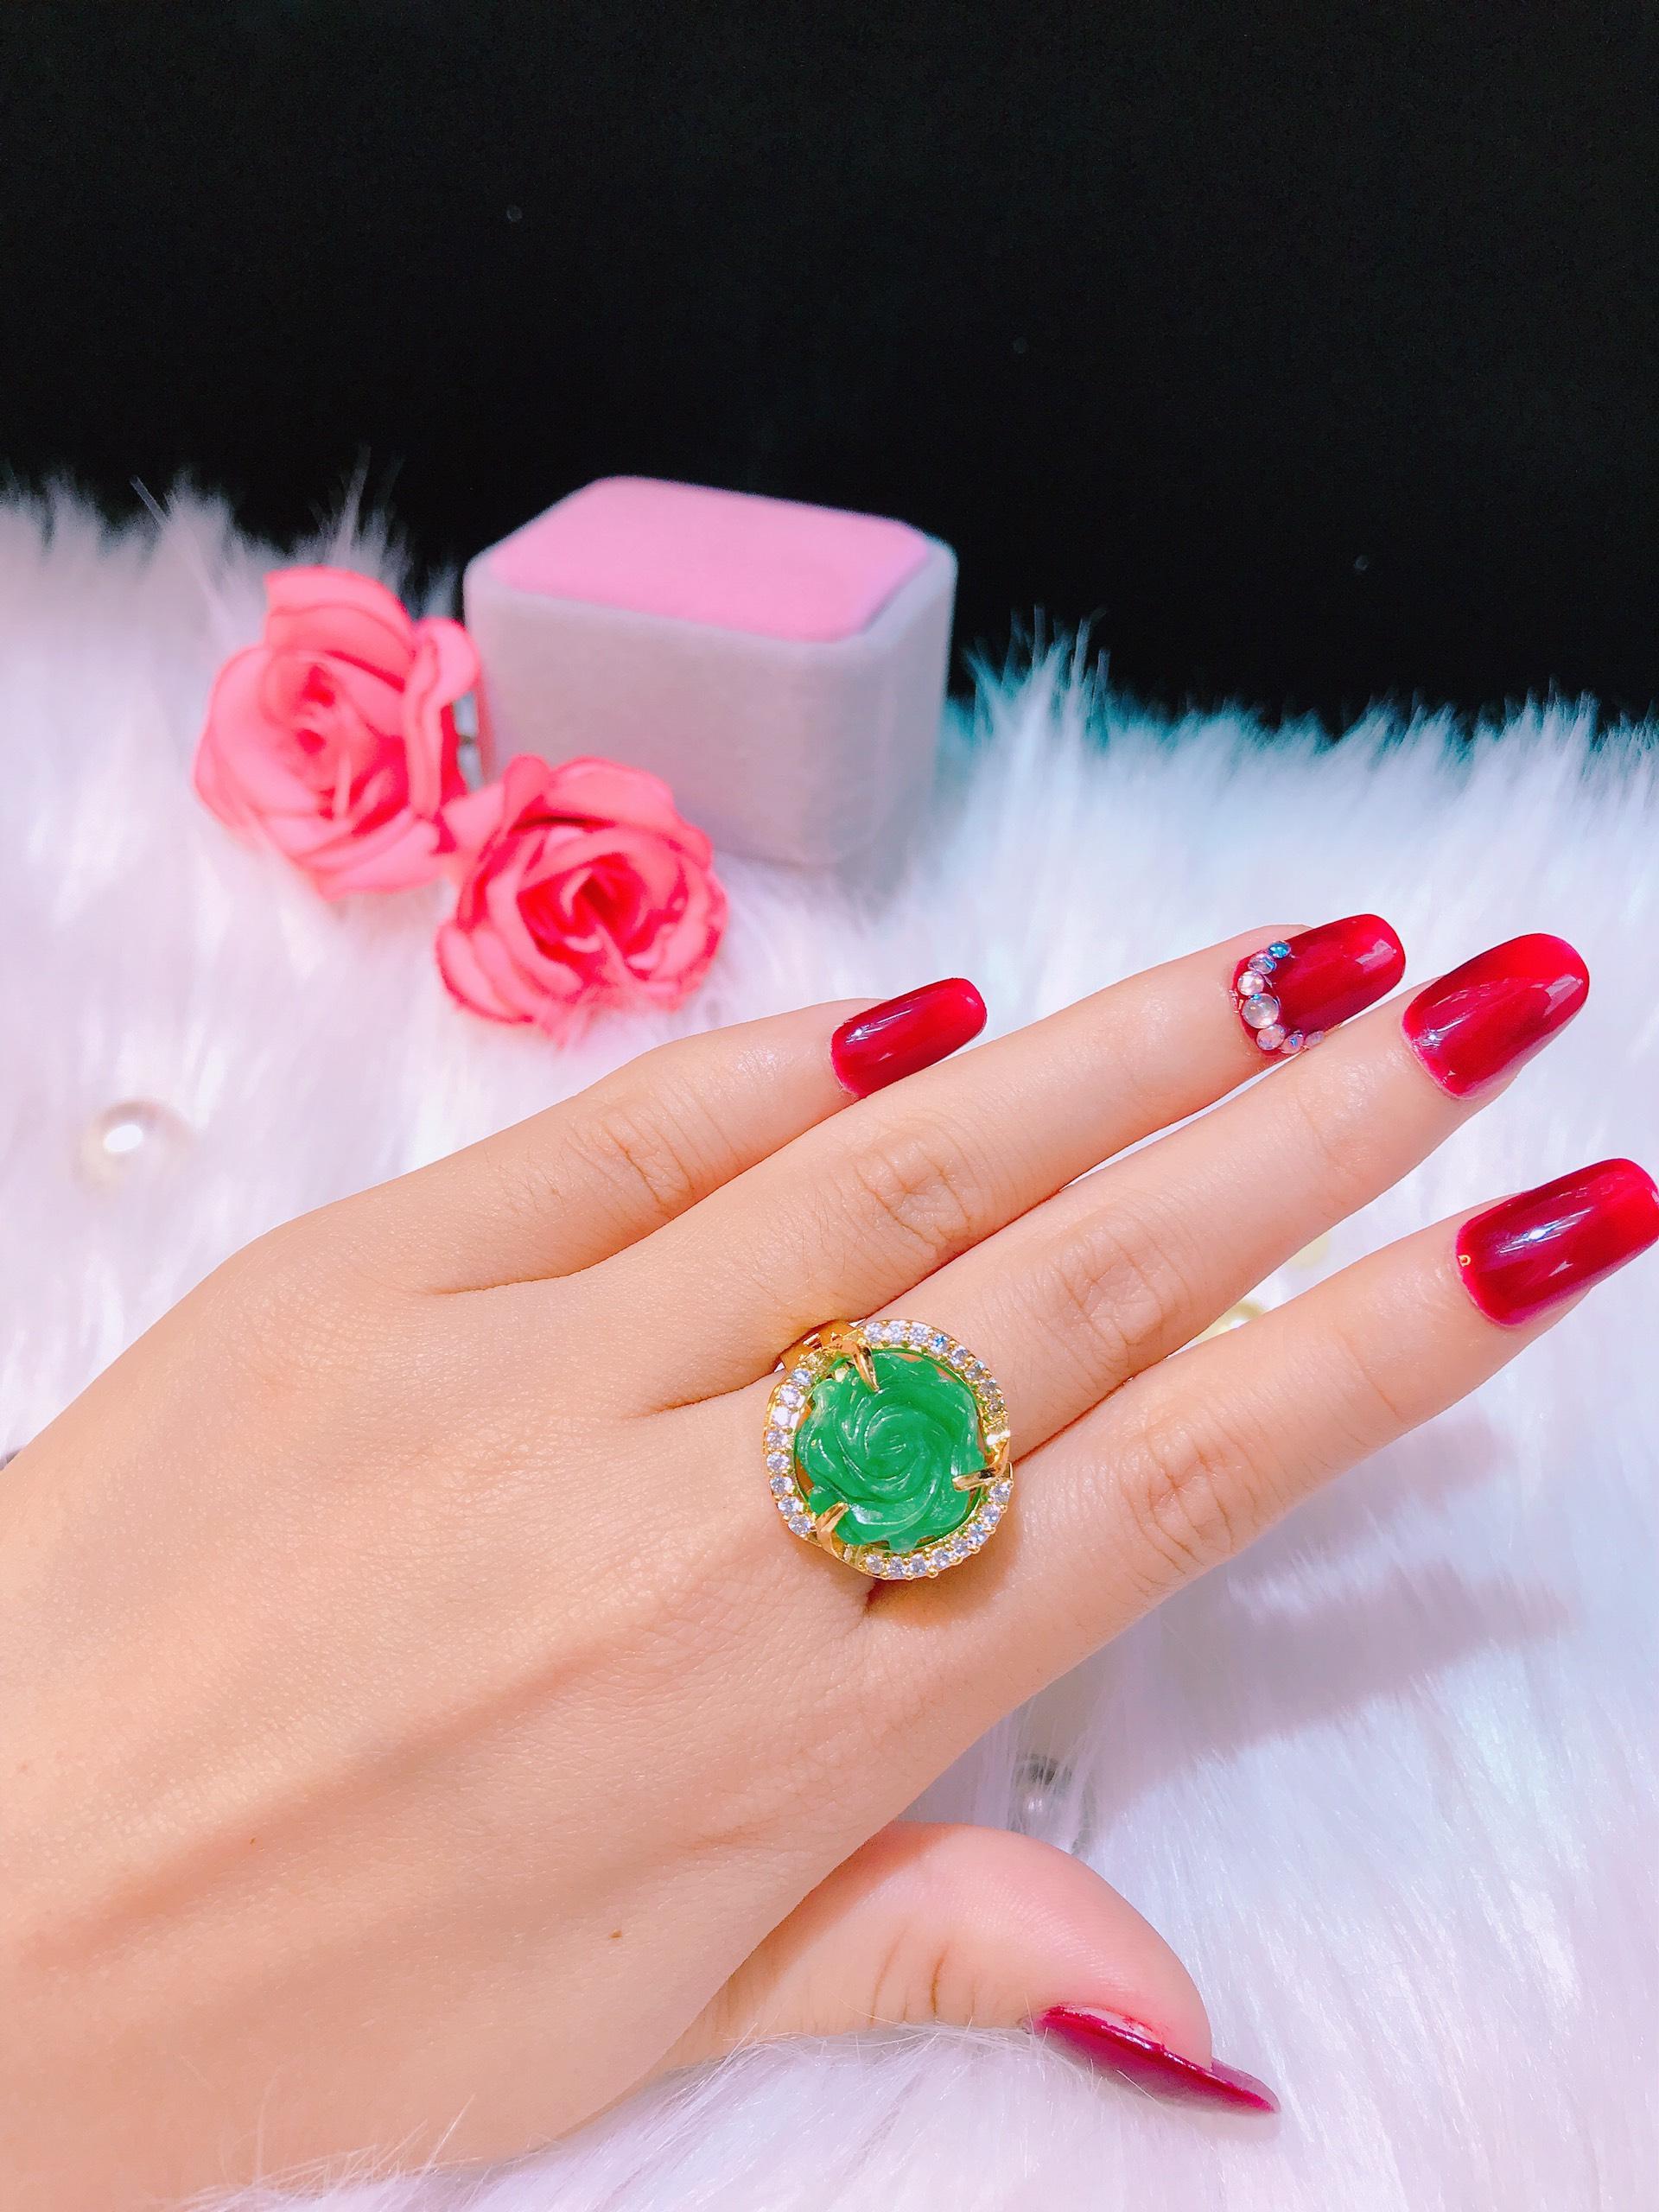 Top 5 mẫu nhẫn hoa hồng đẹp dịu dàng dễ thương nhất cho phái nữ   Thegioididongcom